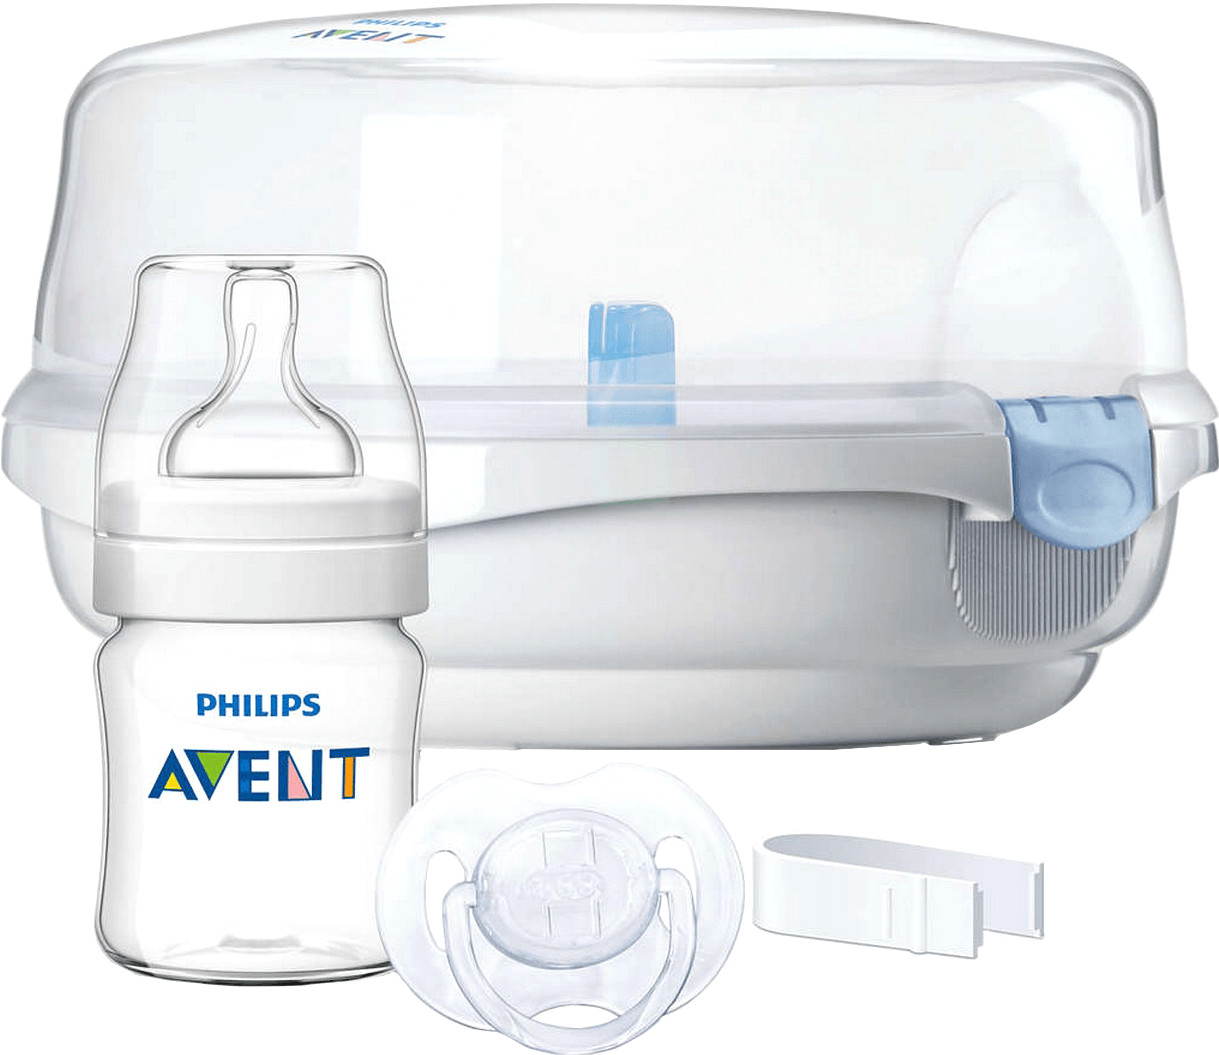 Philips AVENT Sterilizzatore per microonde a € 31,37 (oggi)